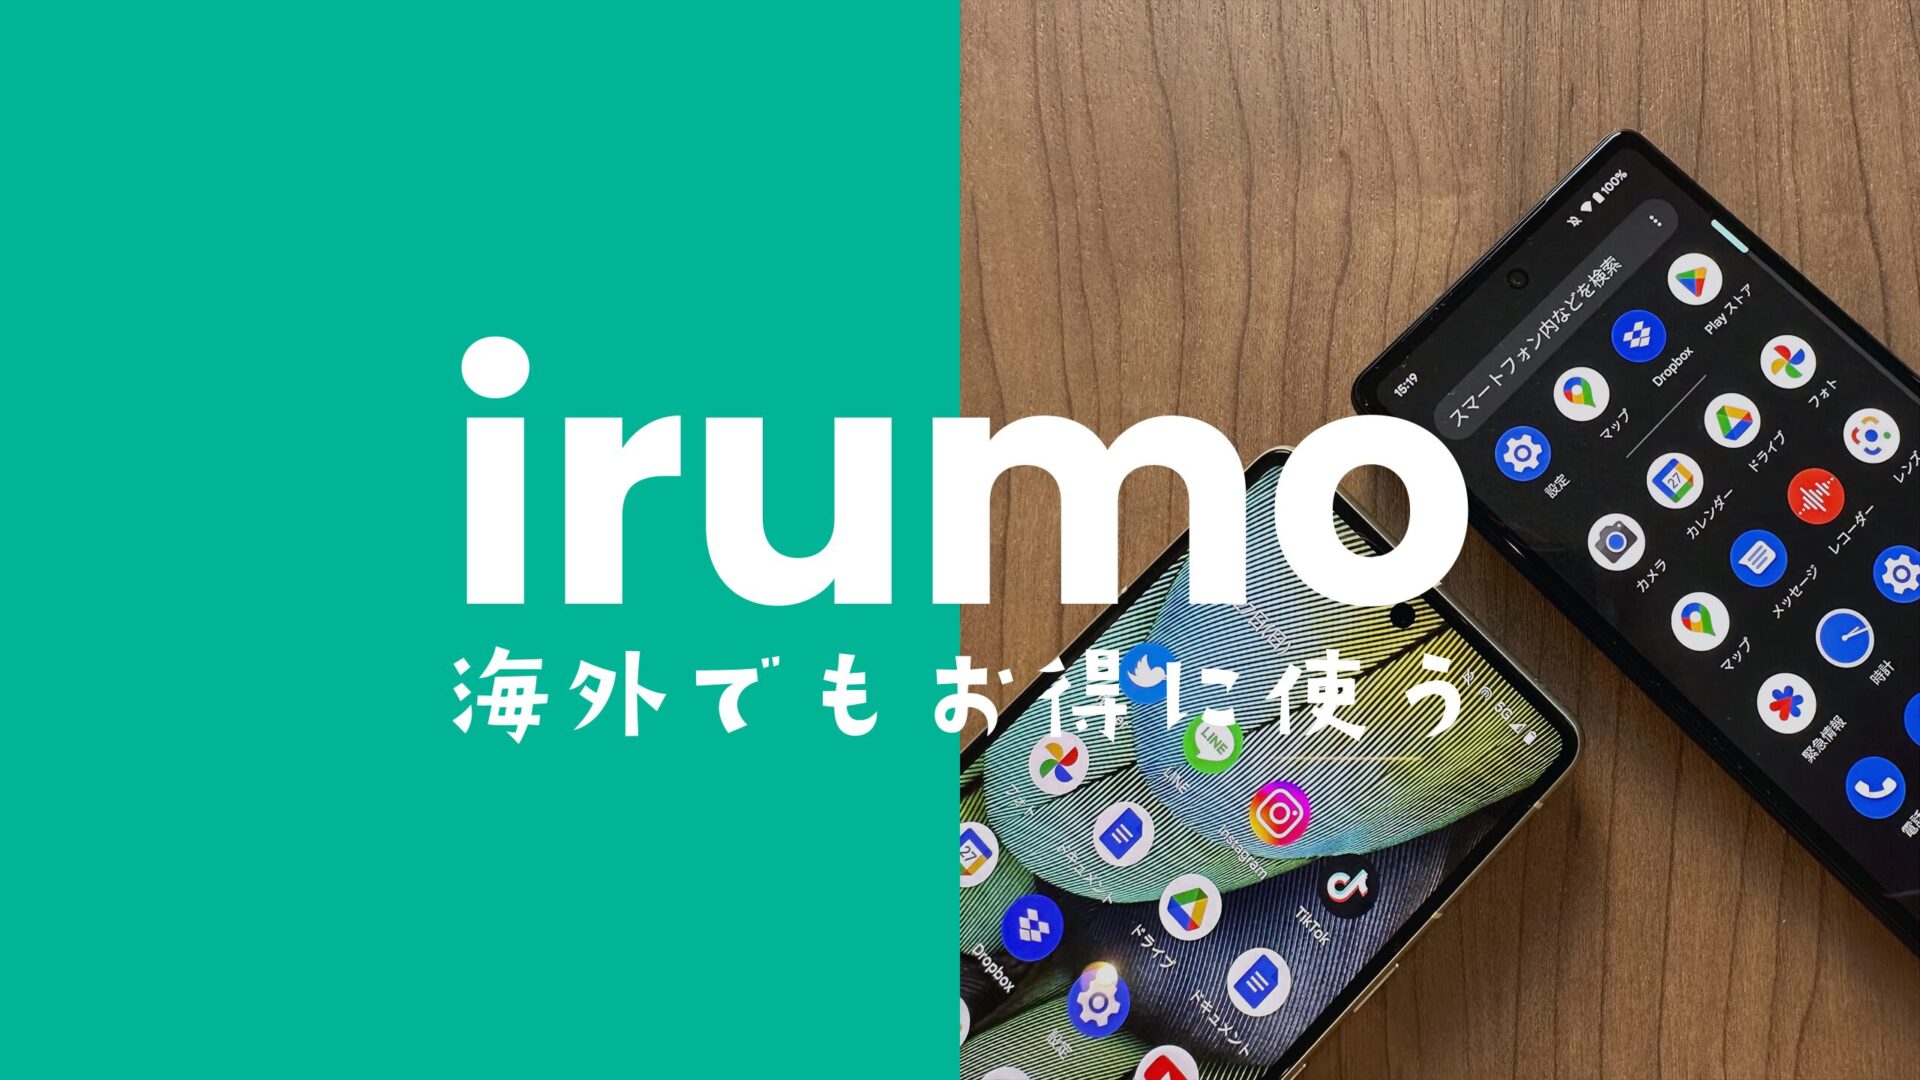 irumo(イルモ)は韓国で使える。データ通信対応で電話やSMSもOKのサムネイル画像